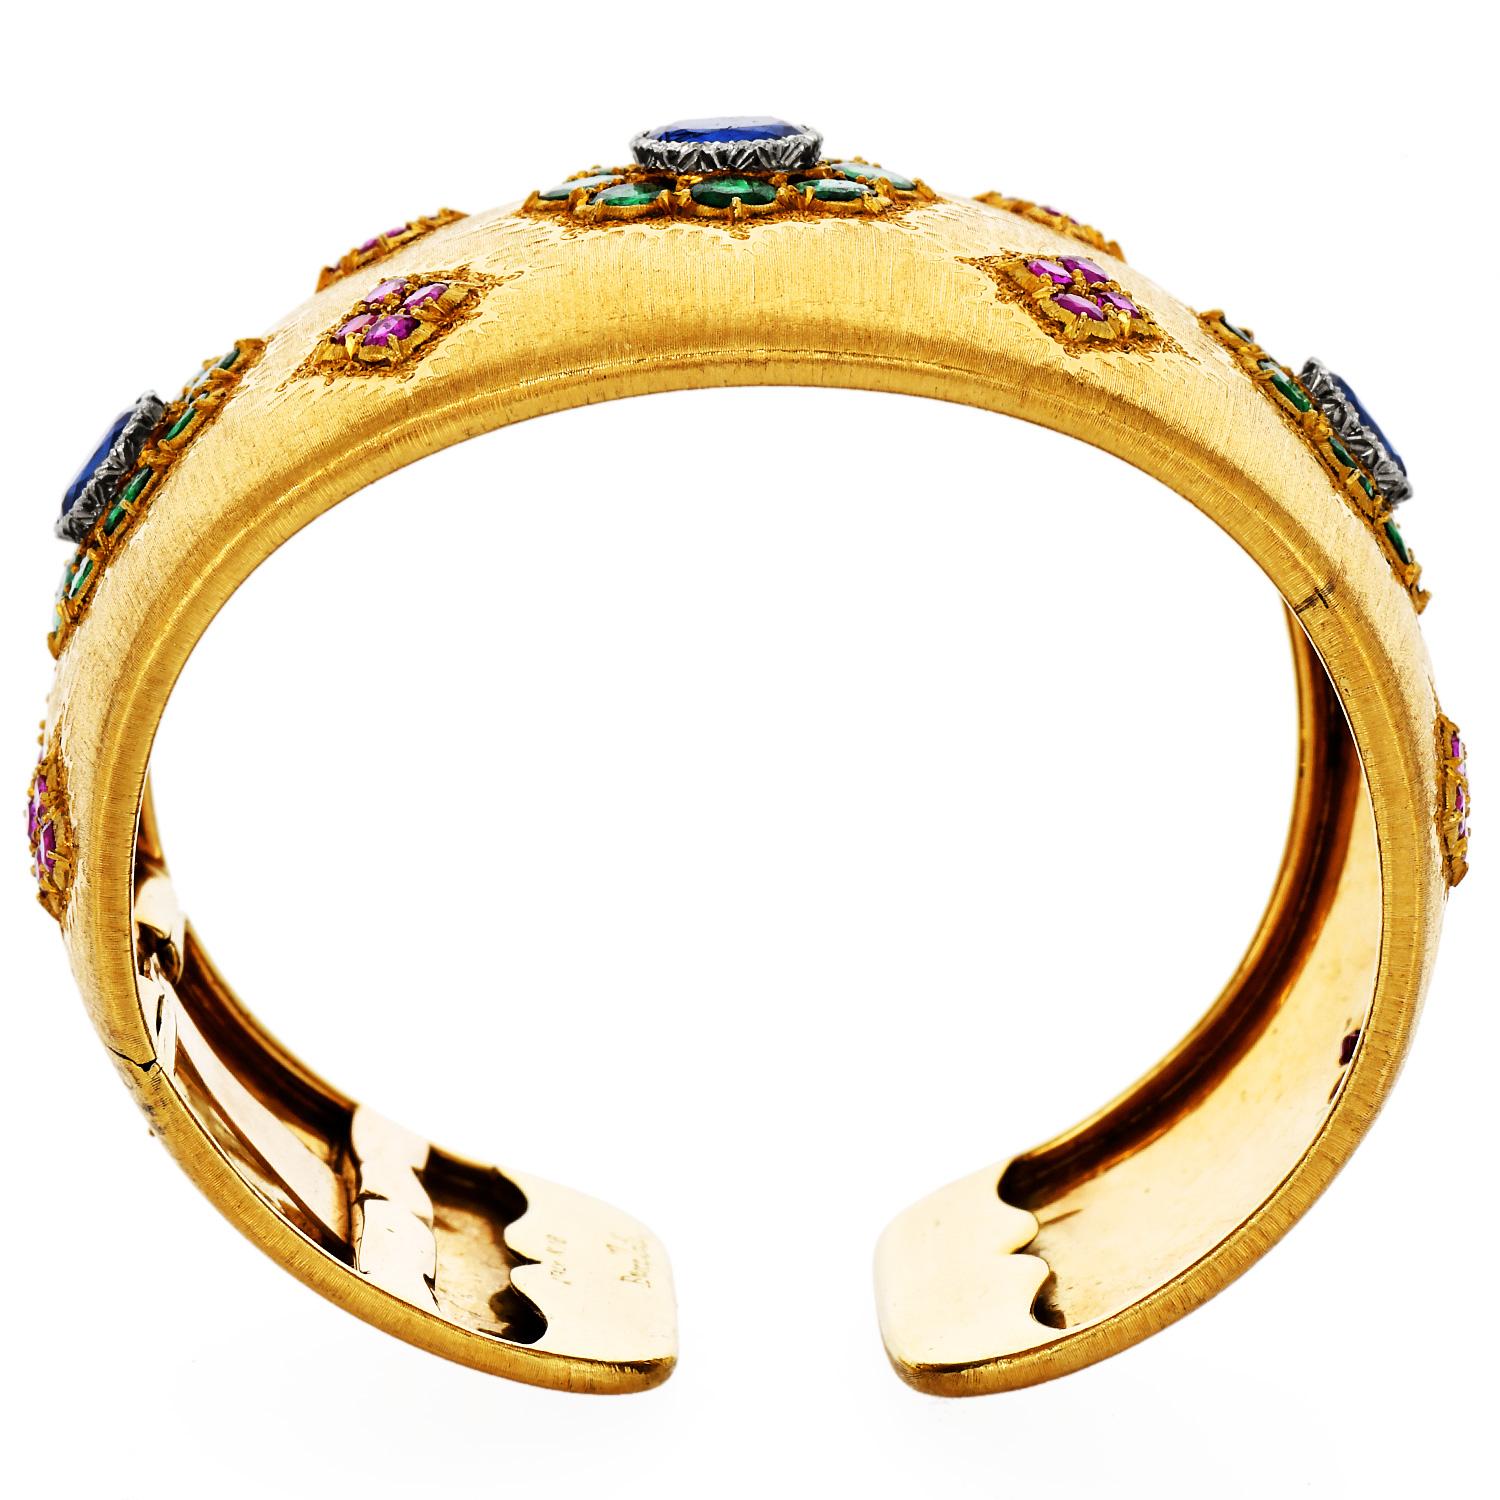  Buccellati 18K Gold Precious Gemstone Cuff Bracelet 1